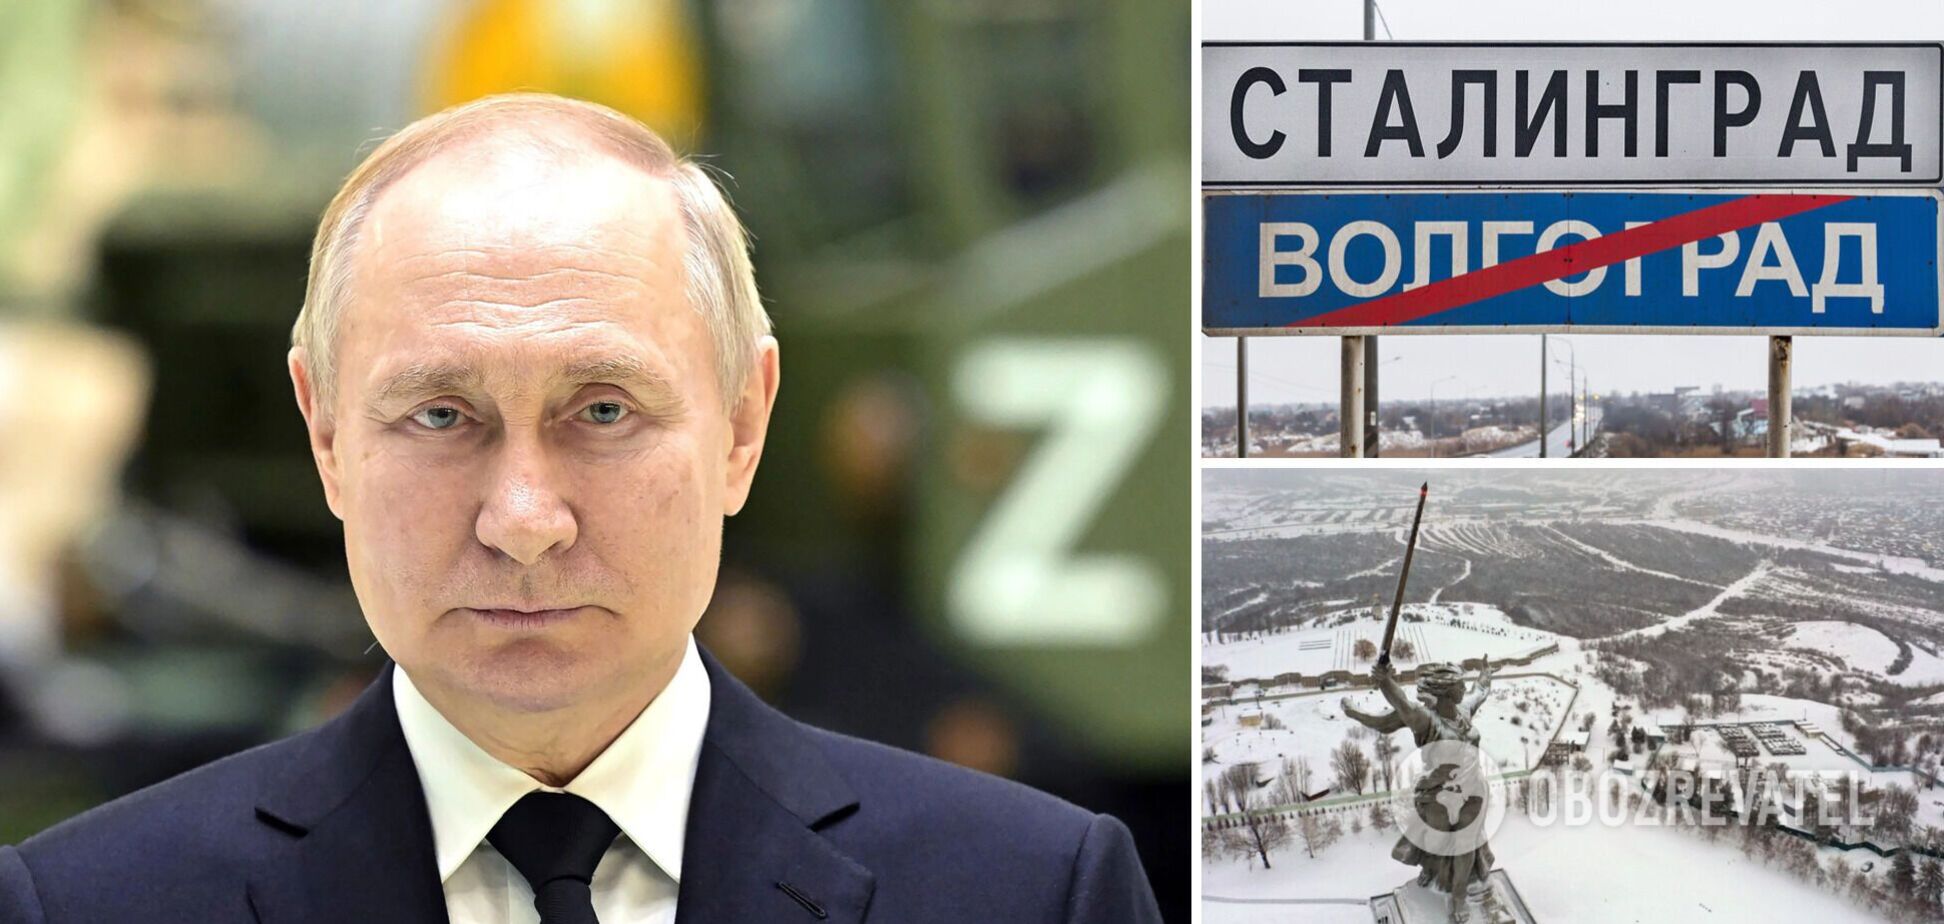 У РФ на в'їзді до Волгограда поставили дорожні знаки з написом 'Сталінград' через візит Путіна 